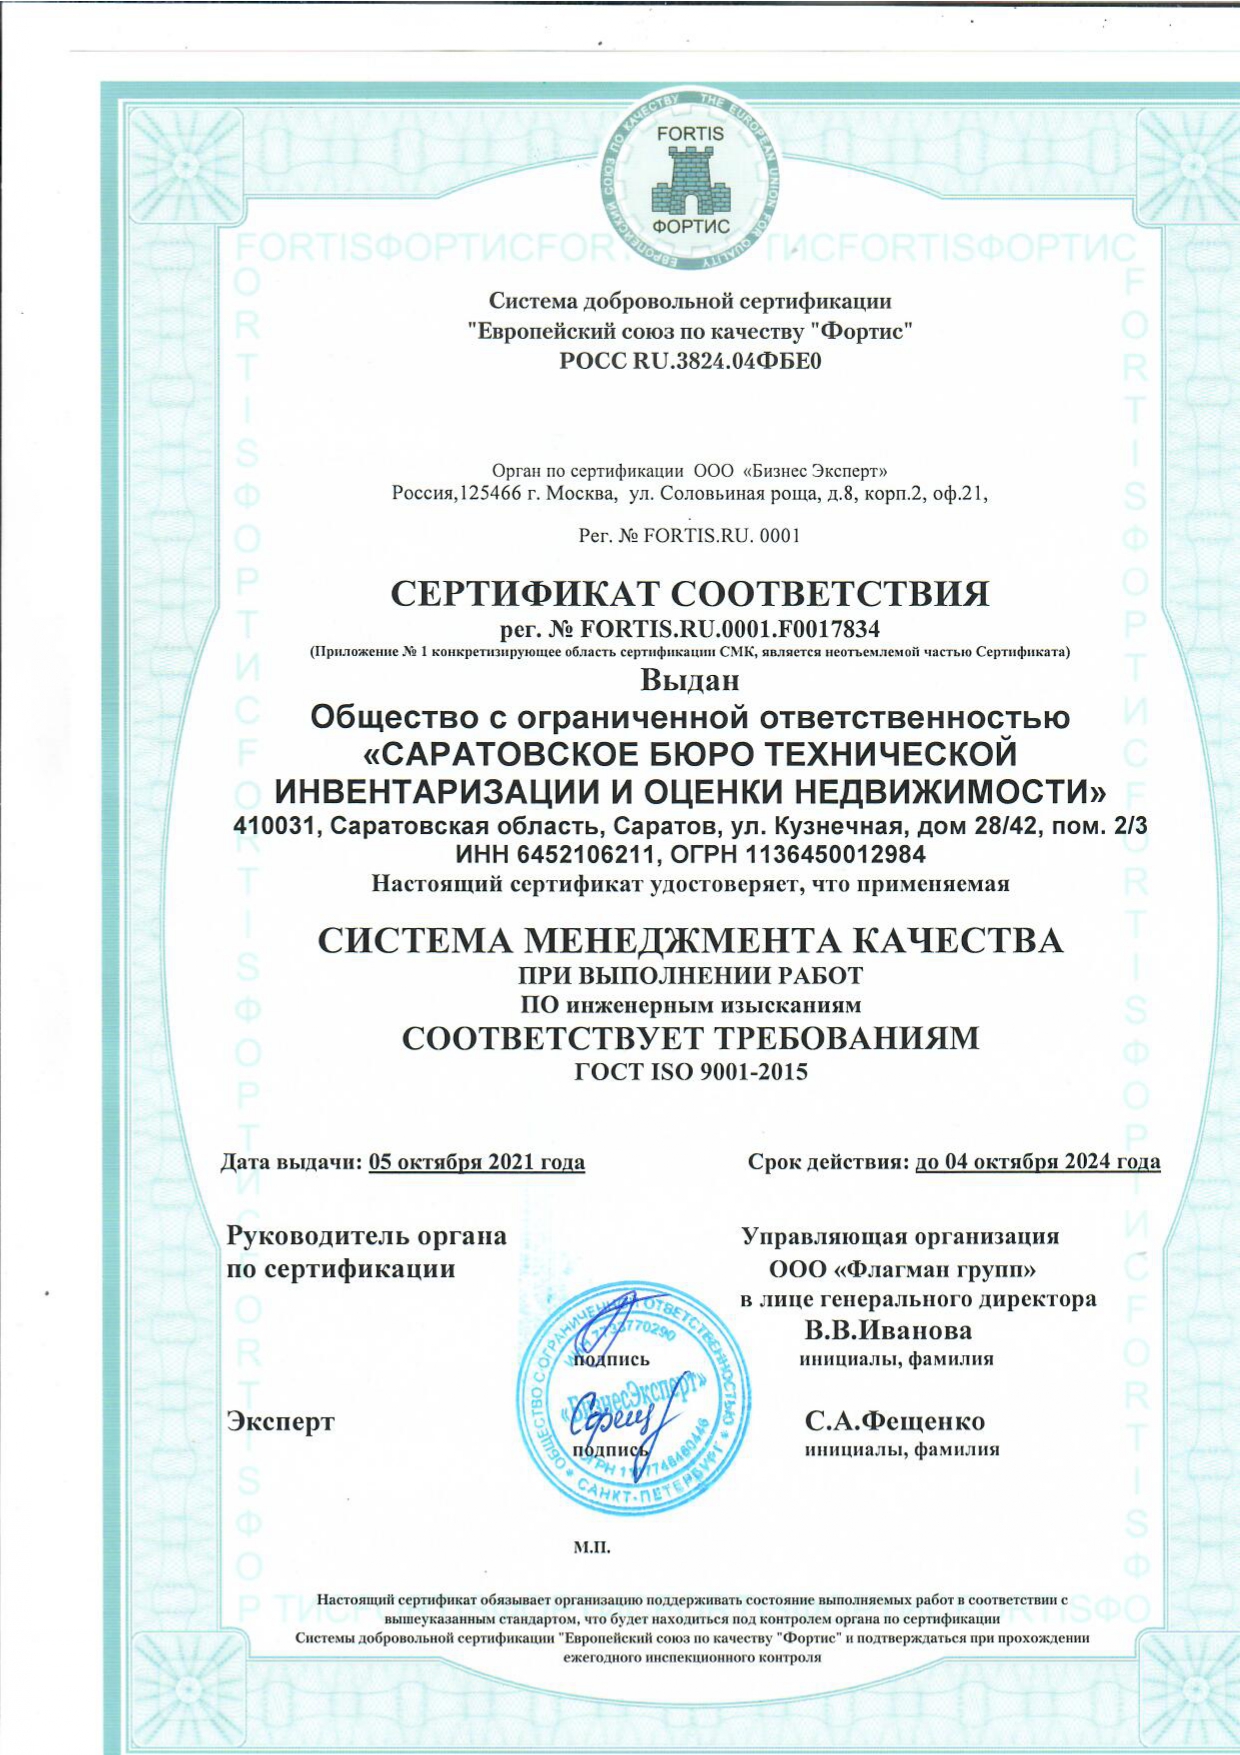 Сертификат соответствия ICO 2021-2024